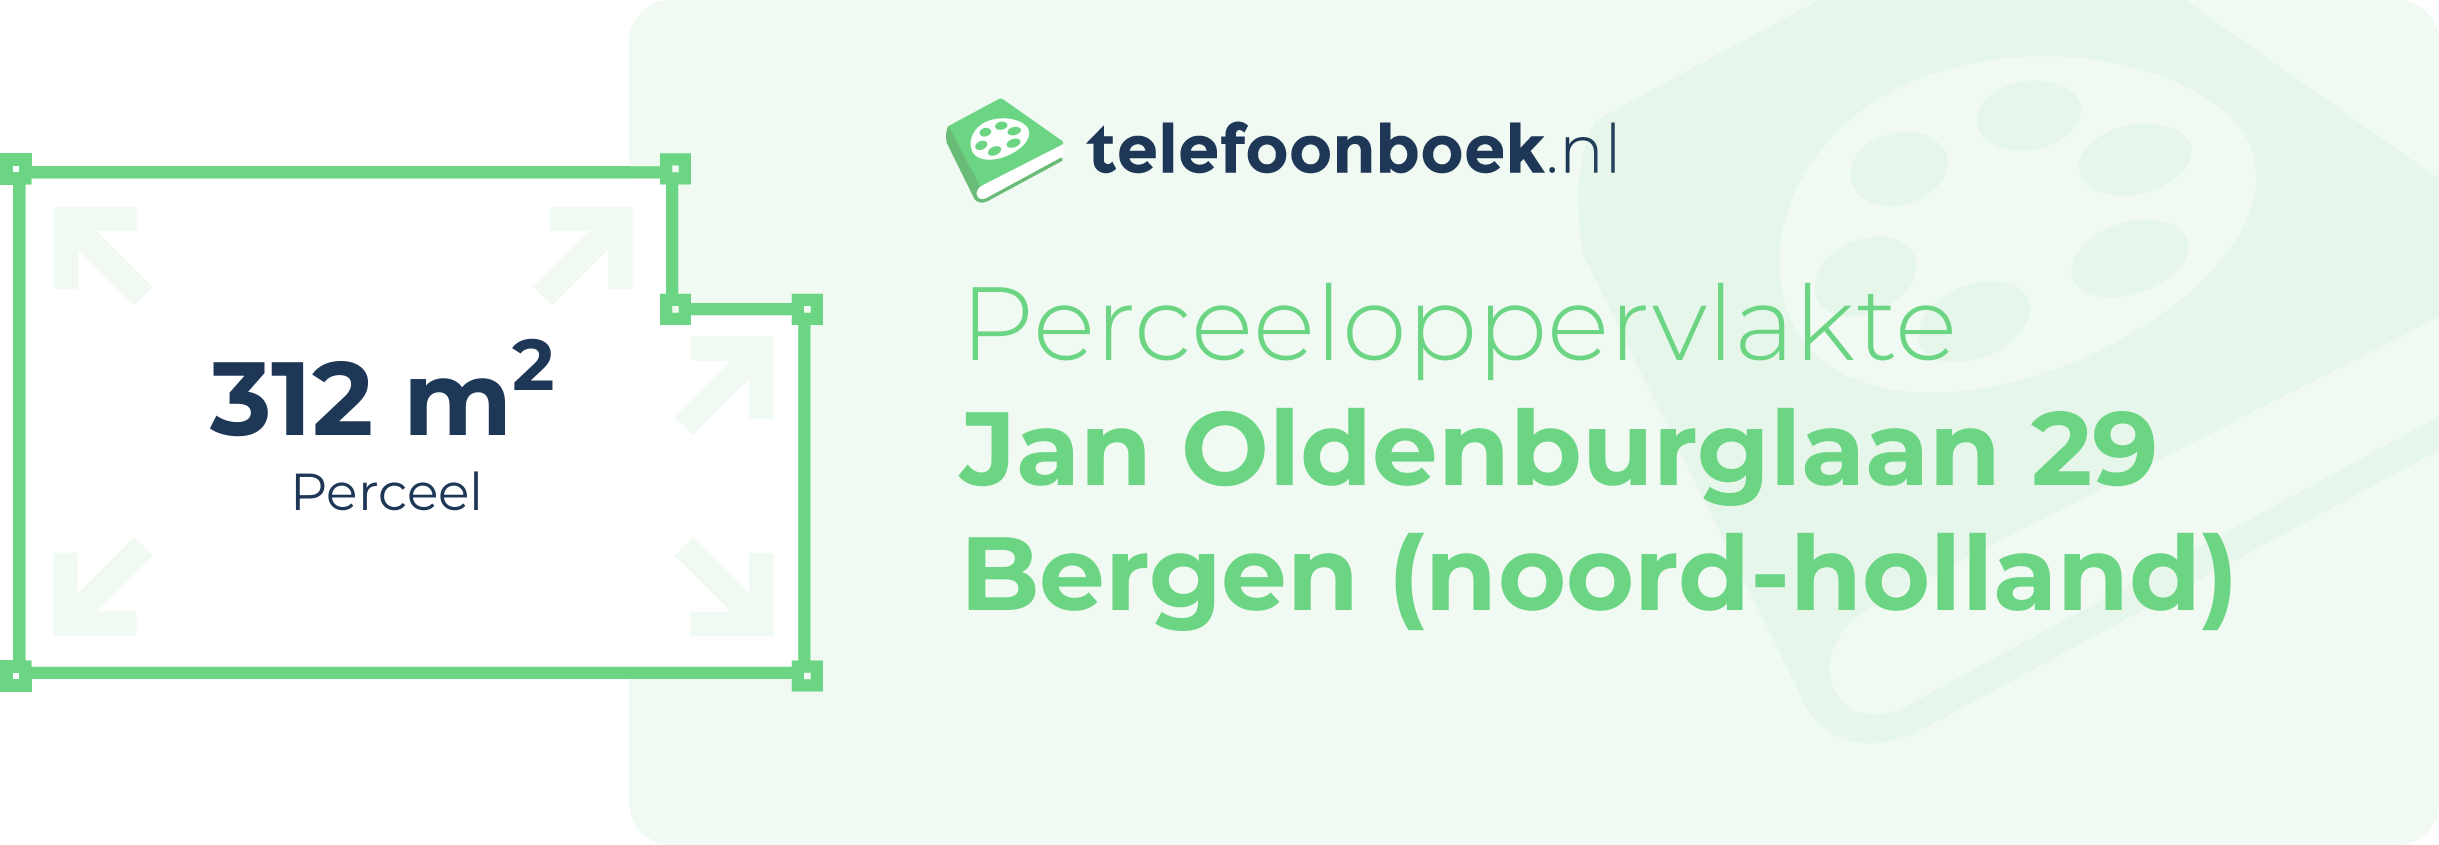 Perceeloppervlakte Jan Oldenburglaan 29 Bergen (Noord-Holland)